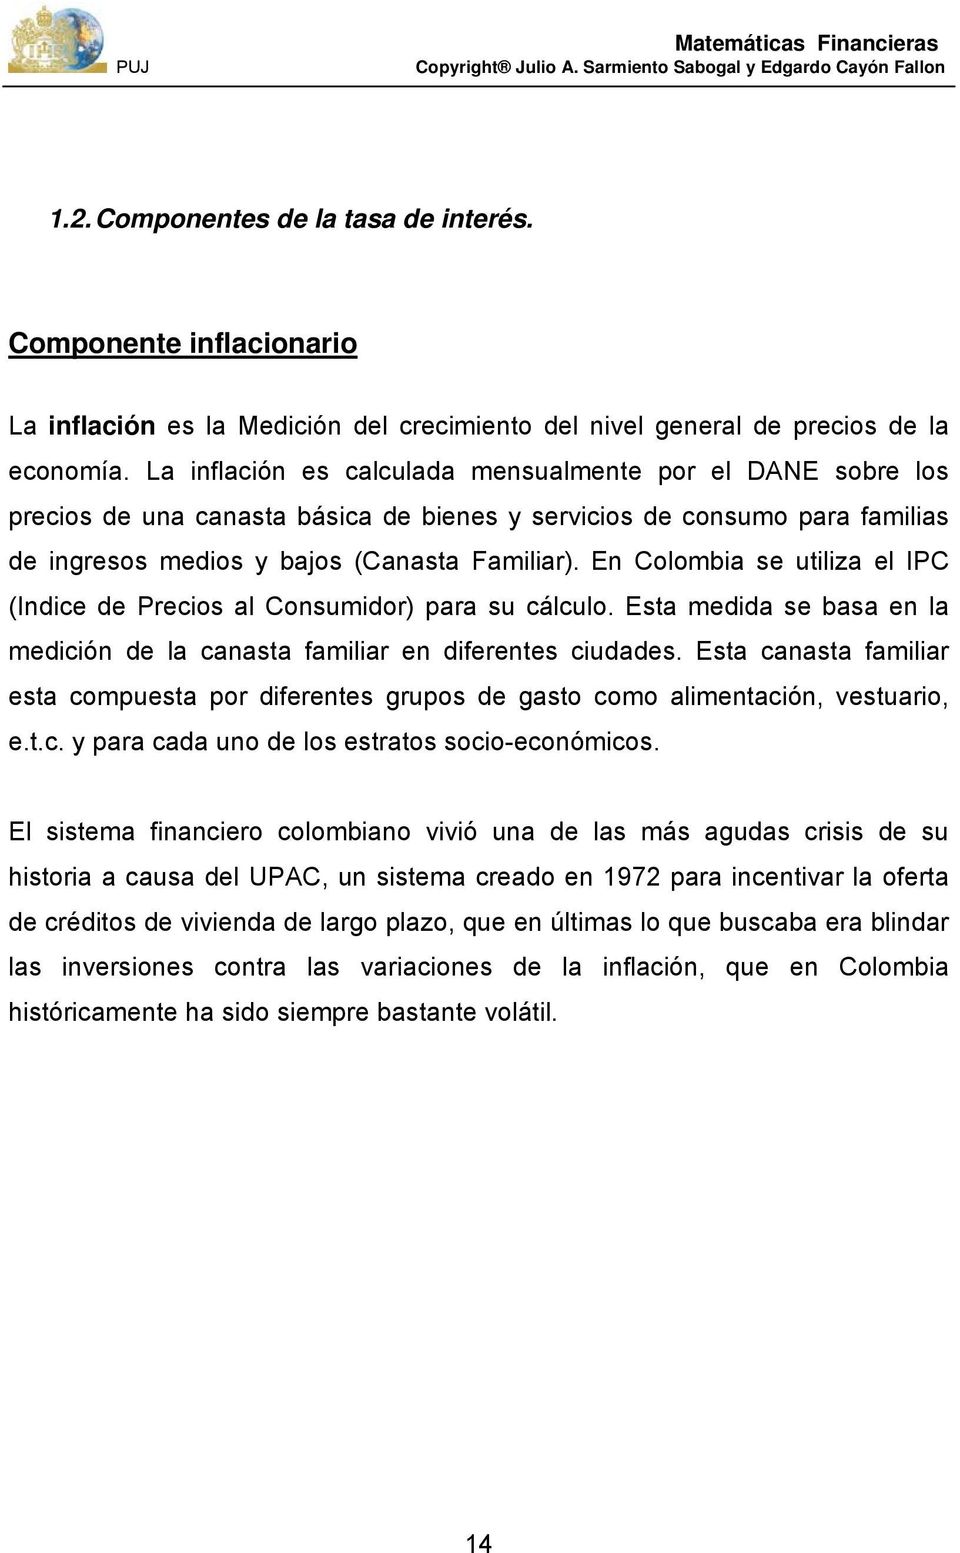 E Colombia se utiliza el IPC (Idice de Precios al Cosumidor) para su cálculo. Esta medida se basa e la medició de la caasta familiar e diferetes ciudades.